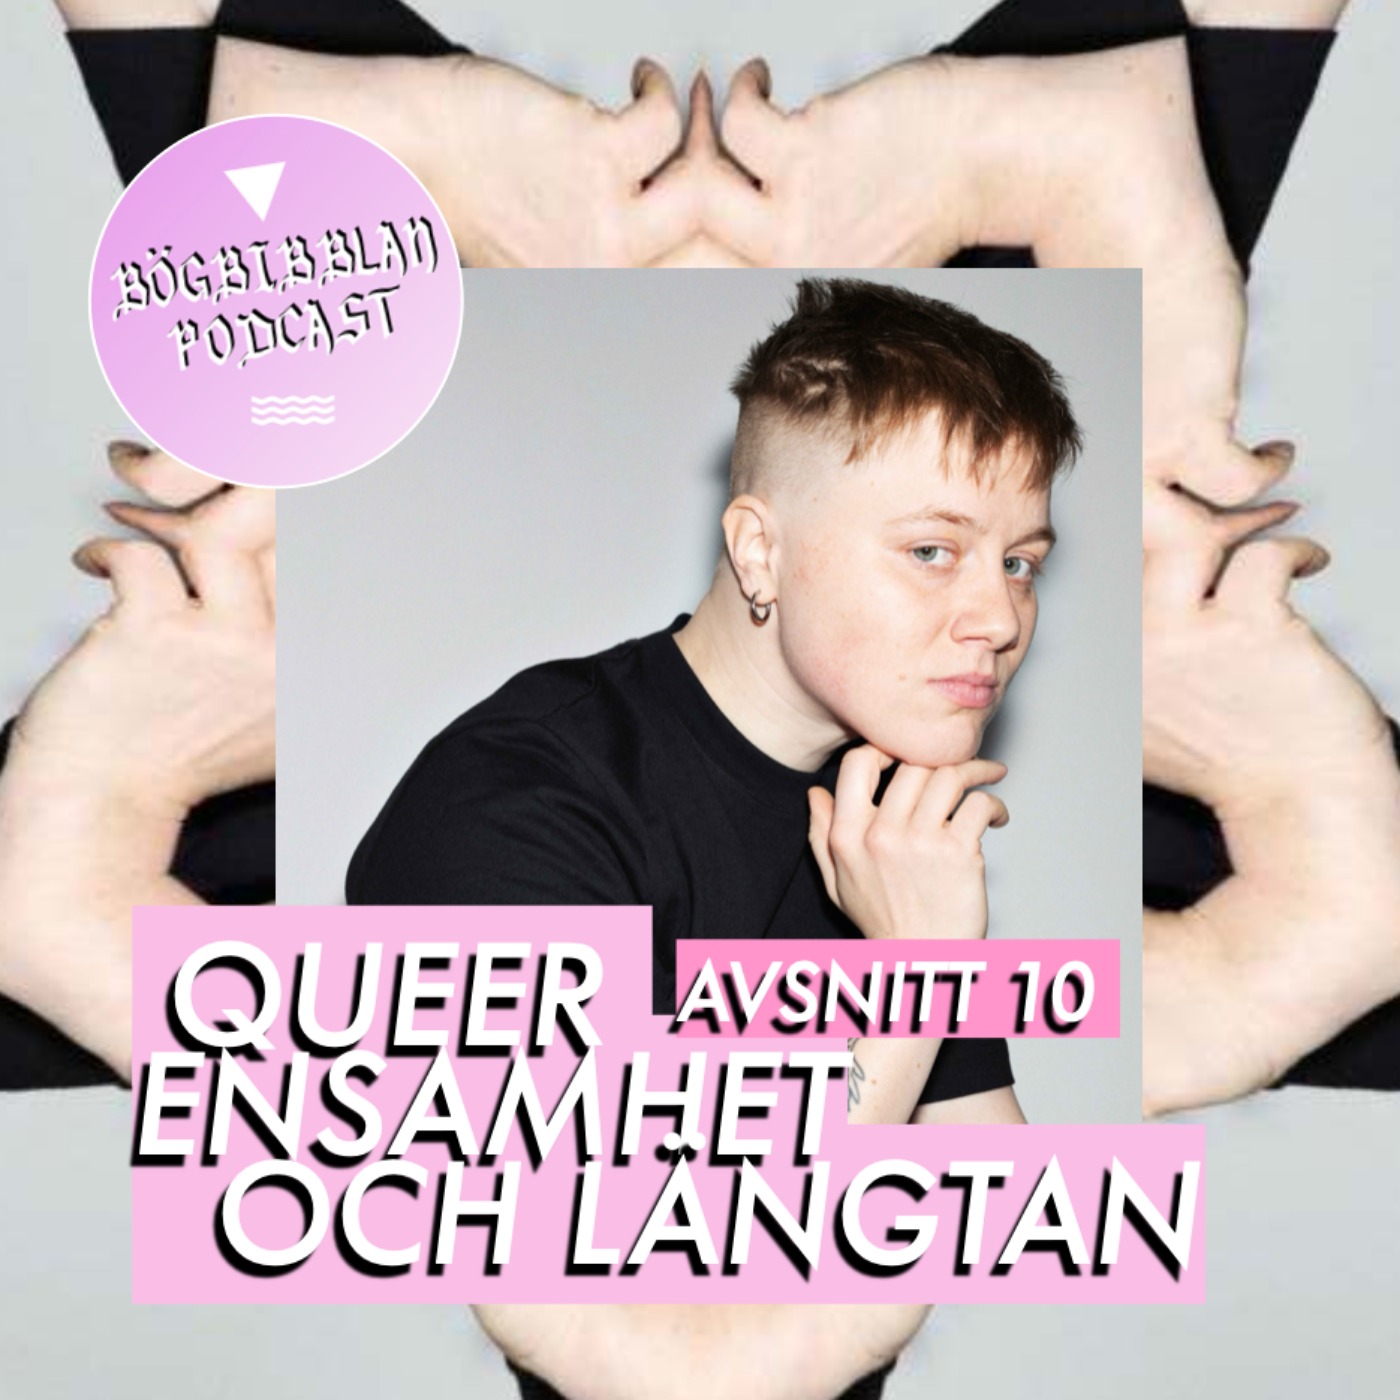 S3E10: Queer ensamhet och längtan med Edith Hammar